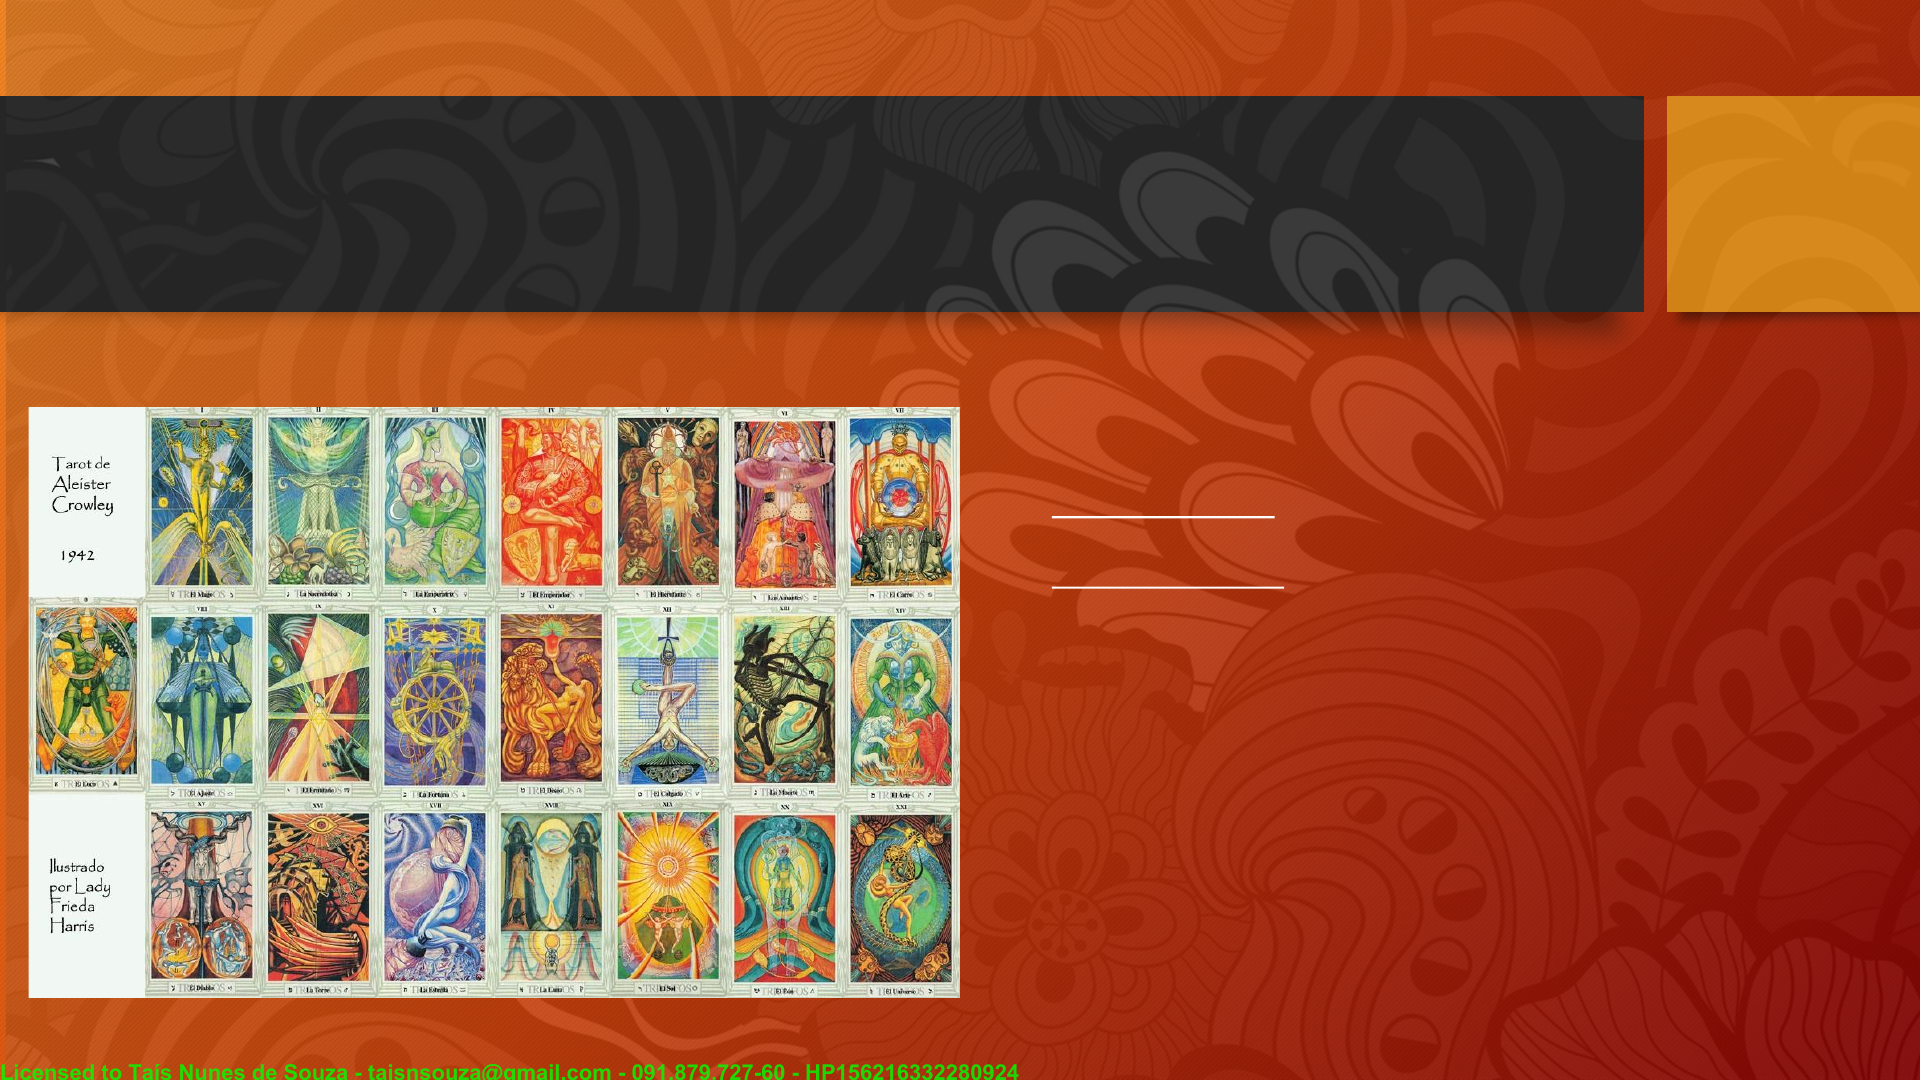 Tarot oráculo cartões com pdf Guia, novo, alma, auto-consciência